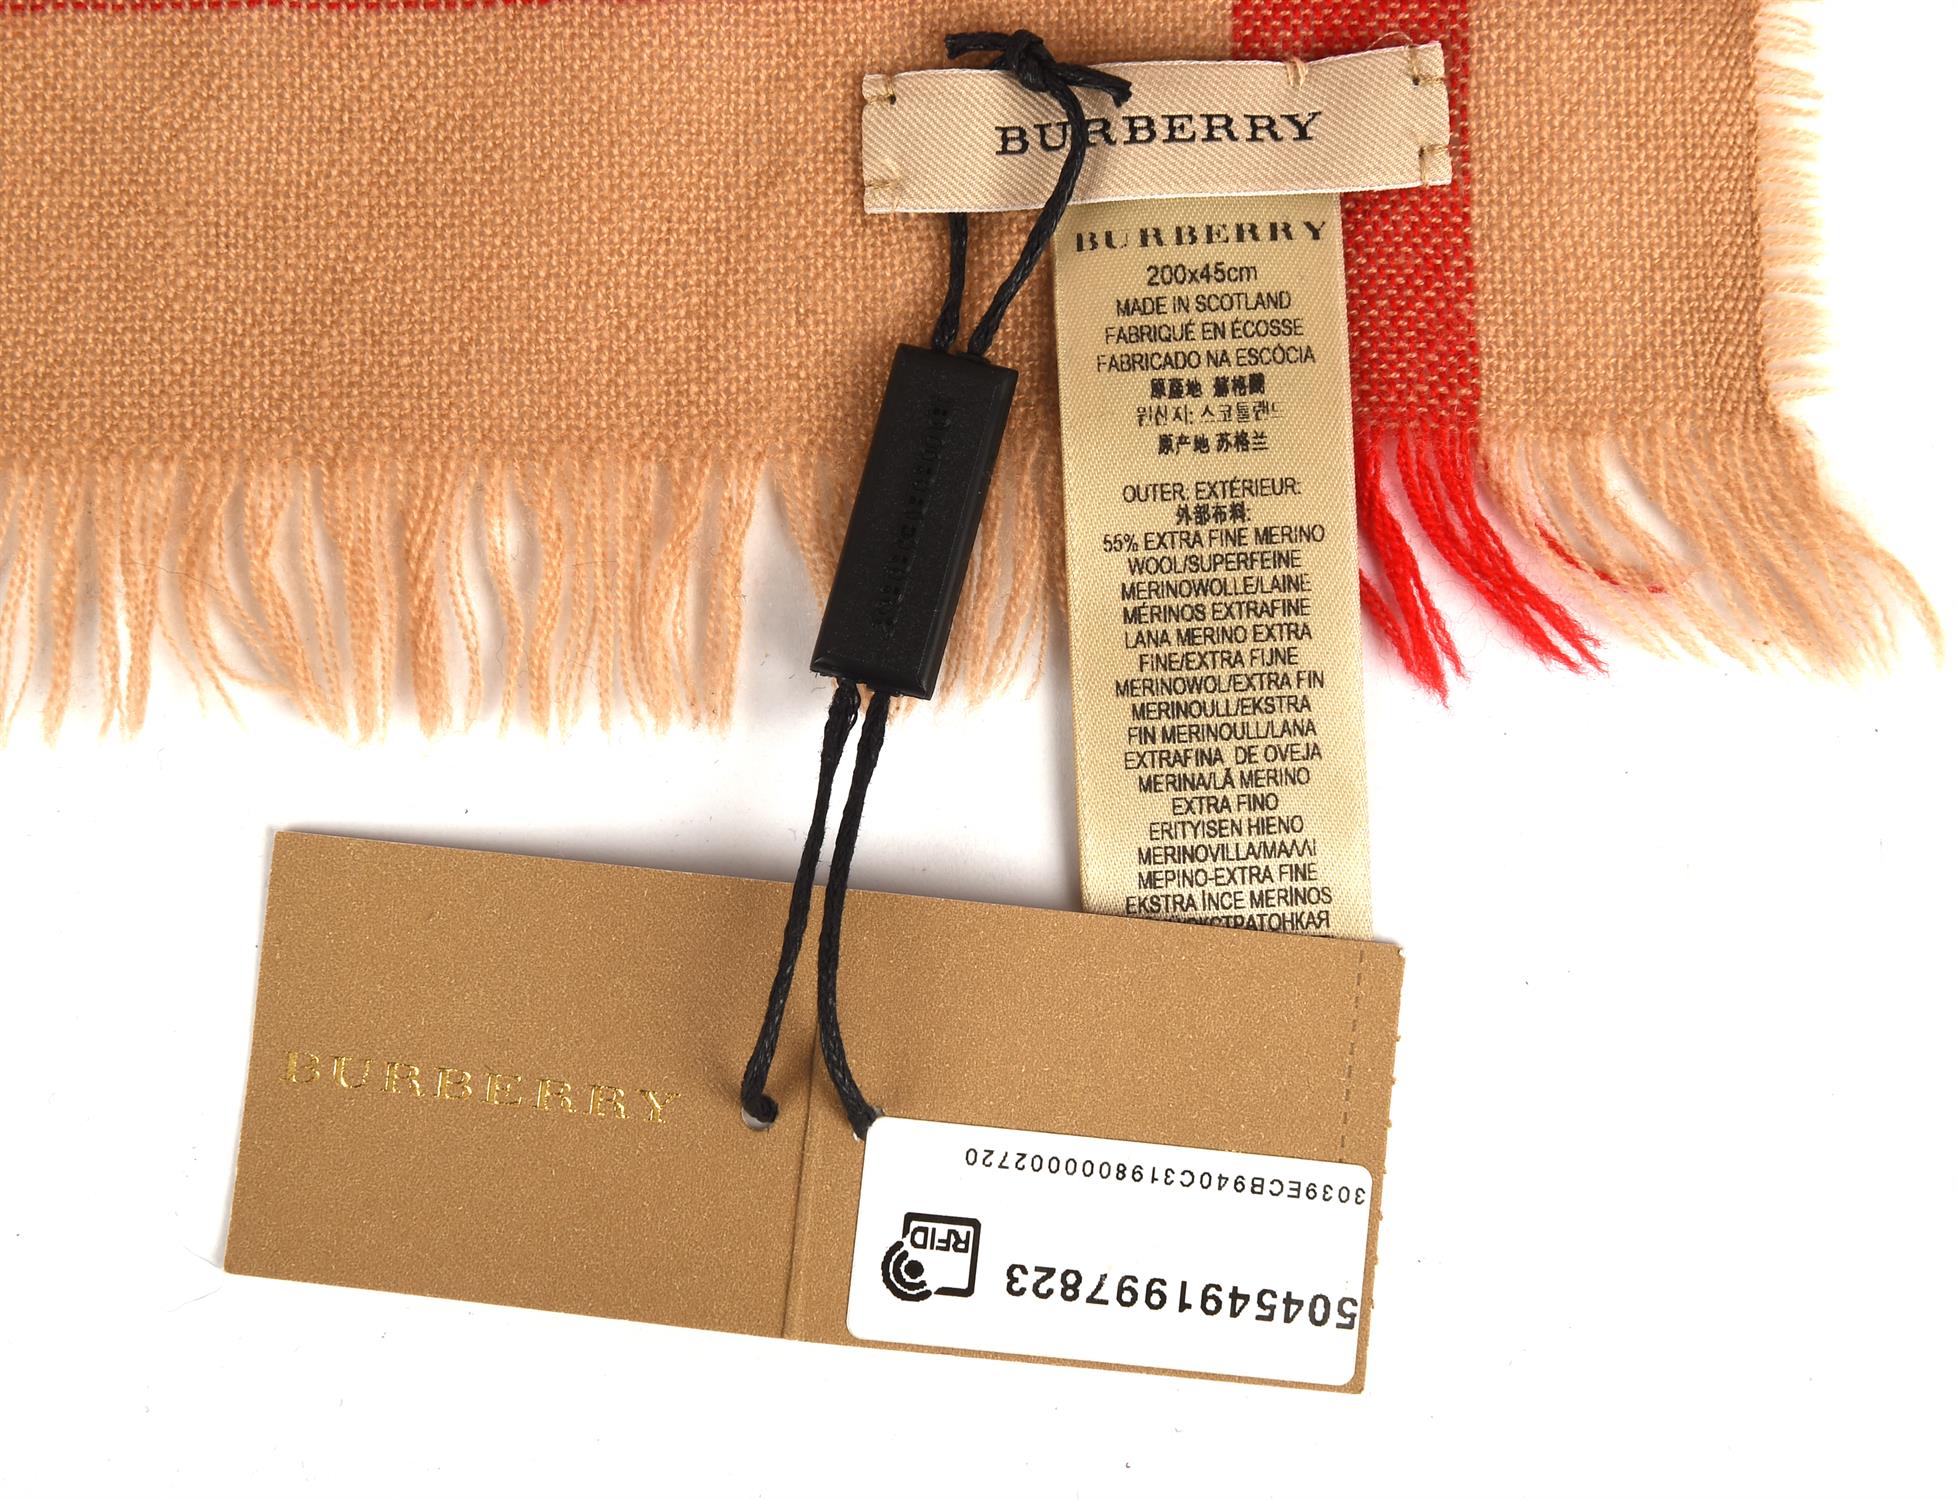 BURBERRY unworn Marino wool scarf in original packaging - Image 3 of 4